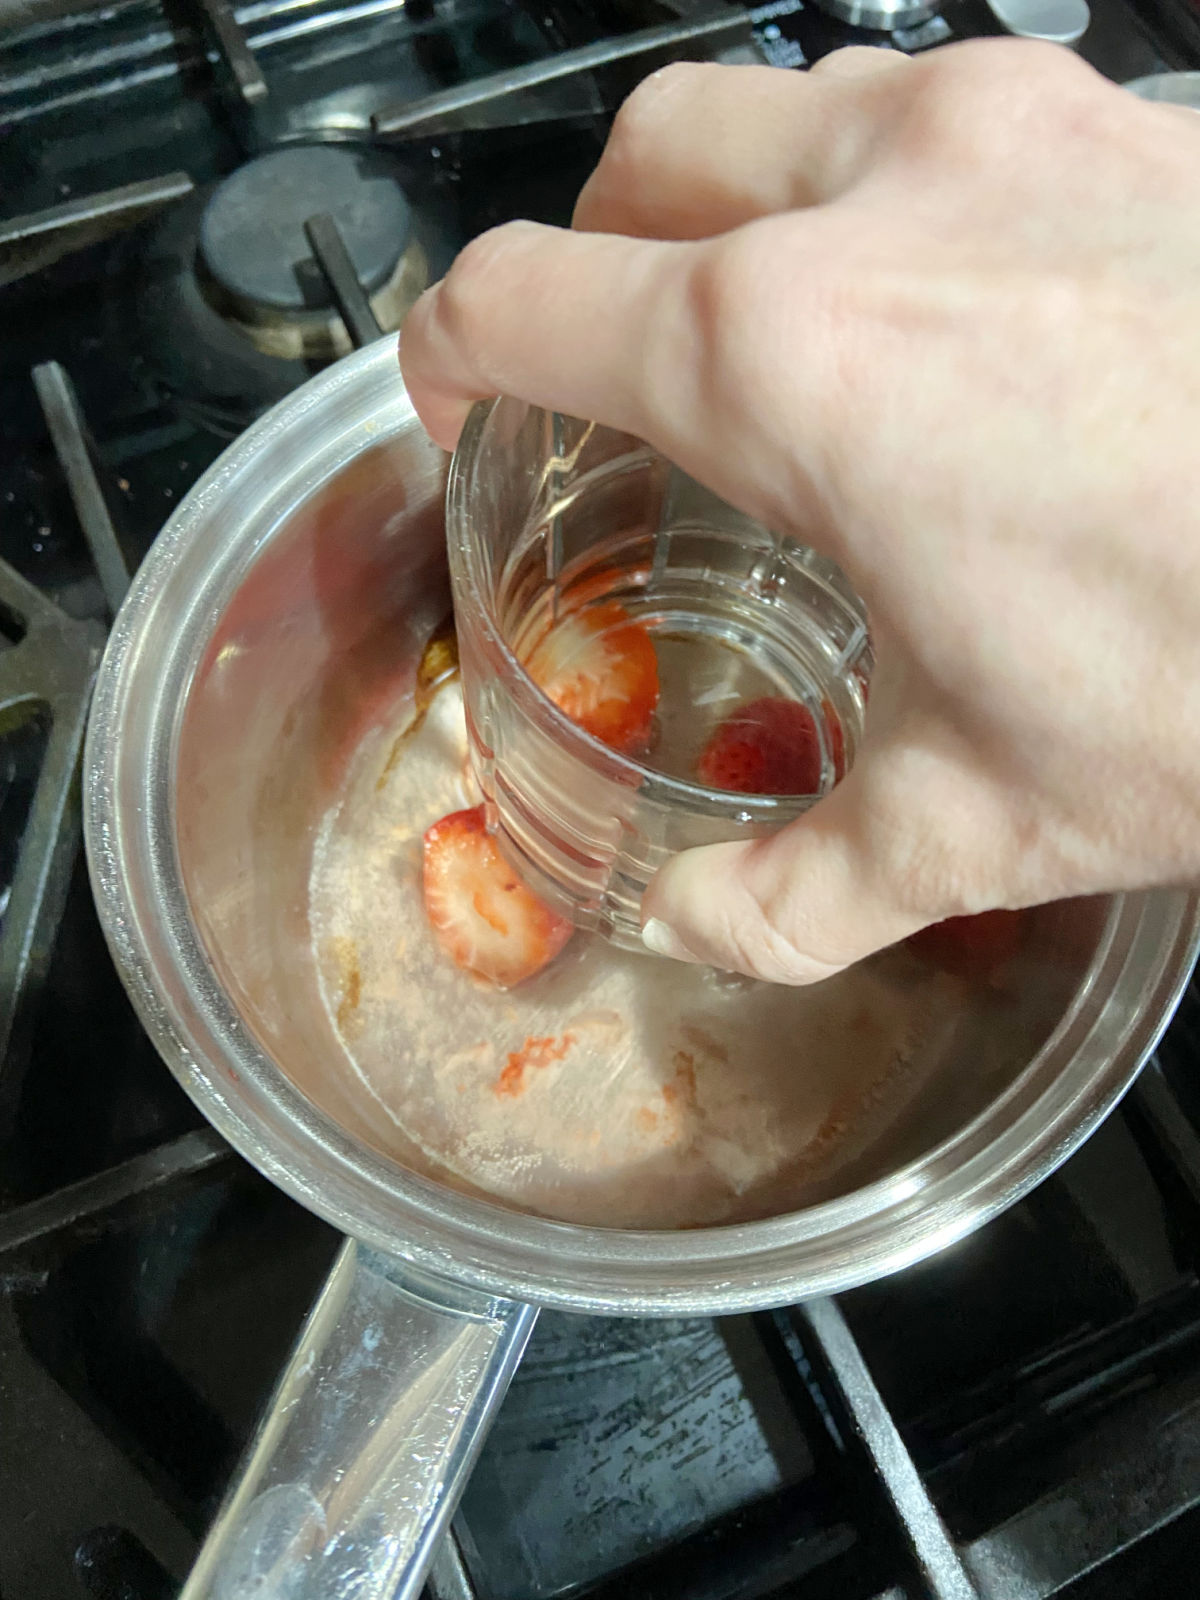 smashing strawberries in a pan. 